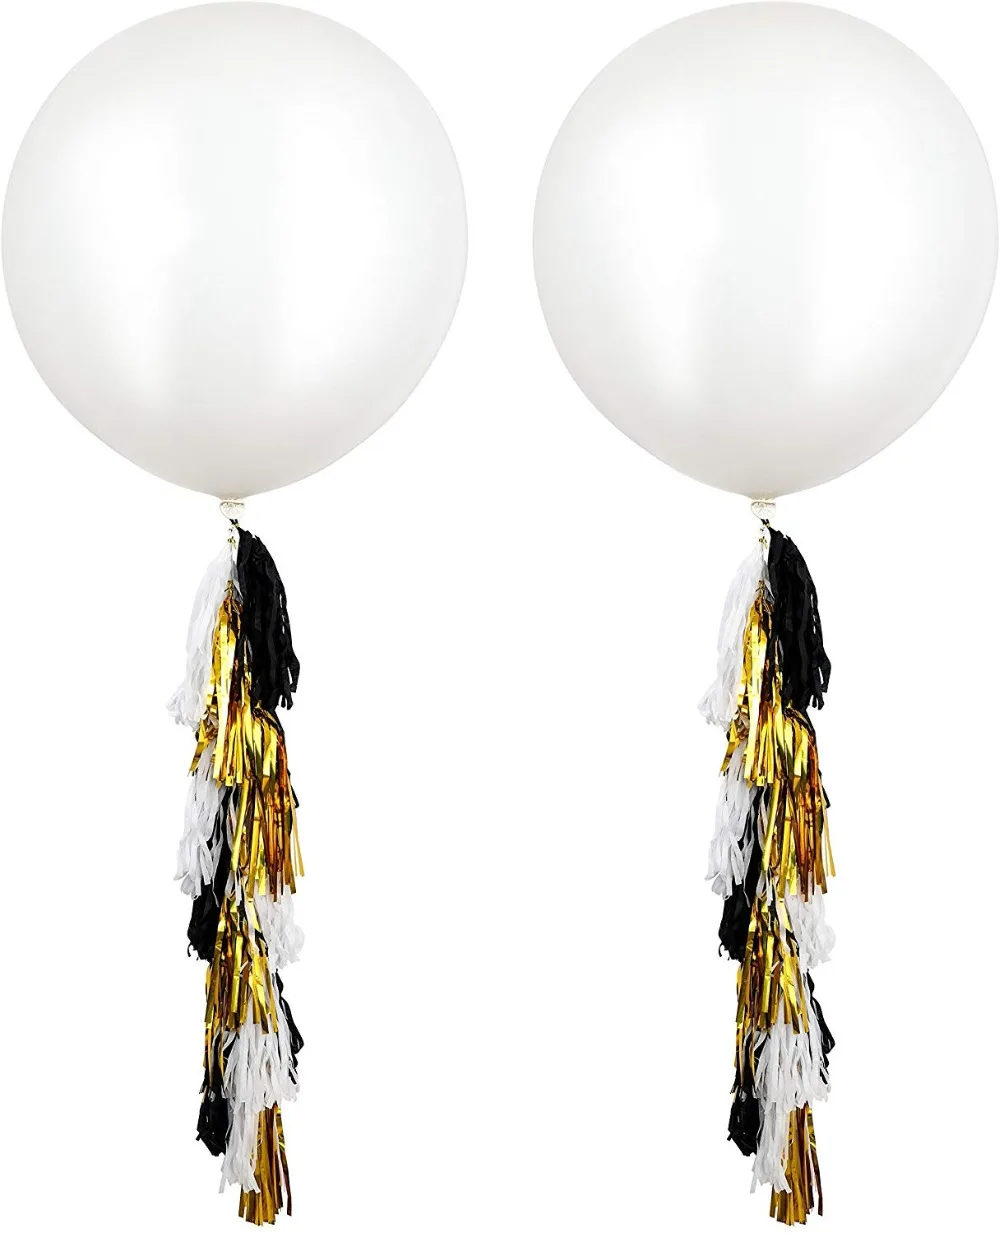 Гигантские 36 дюйм белый круглый пастельные гелиевые воздушные шары с белой черной золотой бахромой Гирлянда Свадьба День рождения для новобрачных, вечеринка в честь новорождённого Вечерние